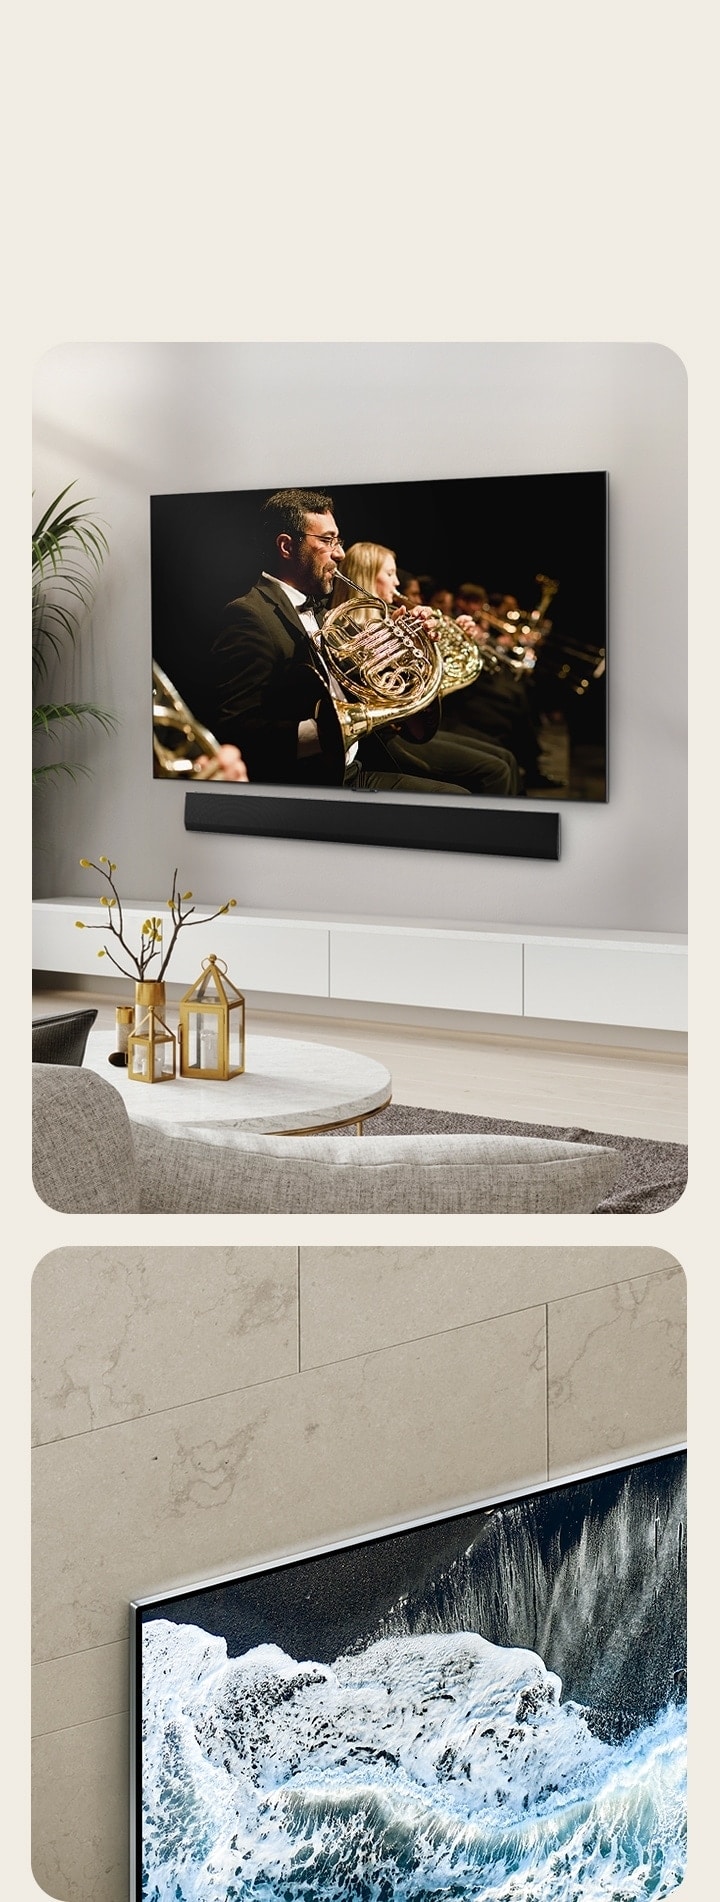 LG OLED TV, OLED G4’ün mermer duvara karşı açılı görünümü duvarla nasıl bütünleştiğini gösteriyor.   Ferah bir yaşam alanında duvara düz yerleştirilmiş LG OLED TV, OLED G4 ve LG Soundbar. Ekranda bir orkestra performansı oynatılıyor. 